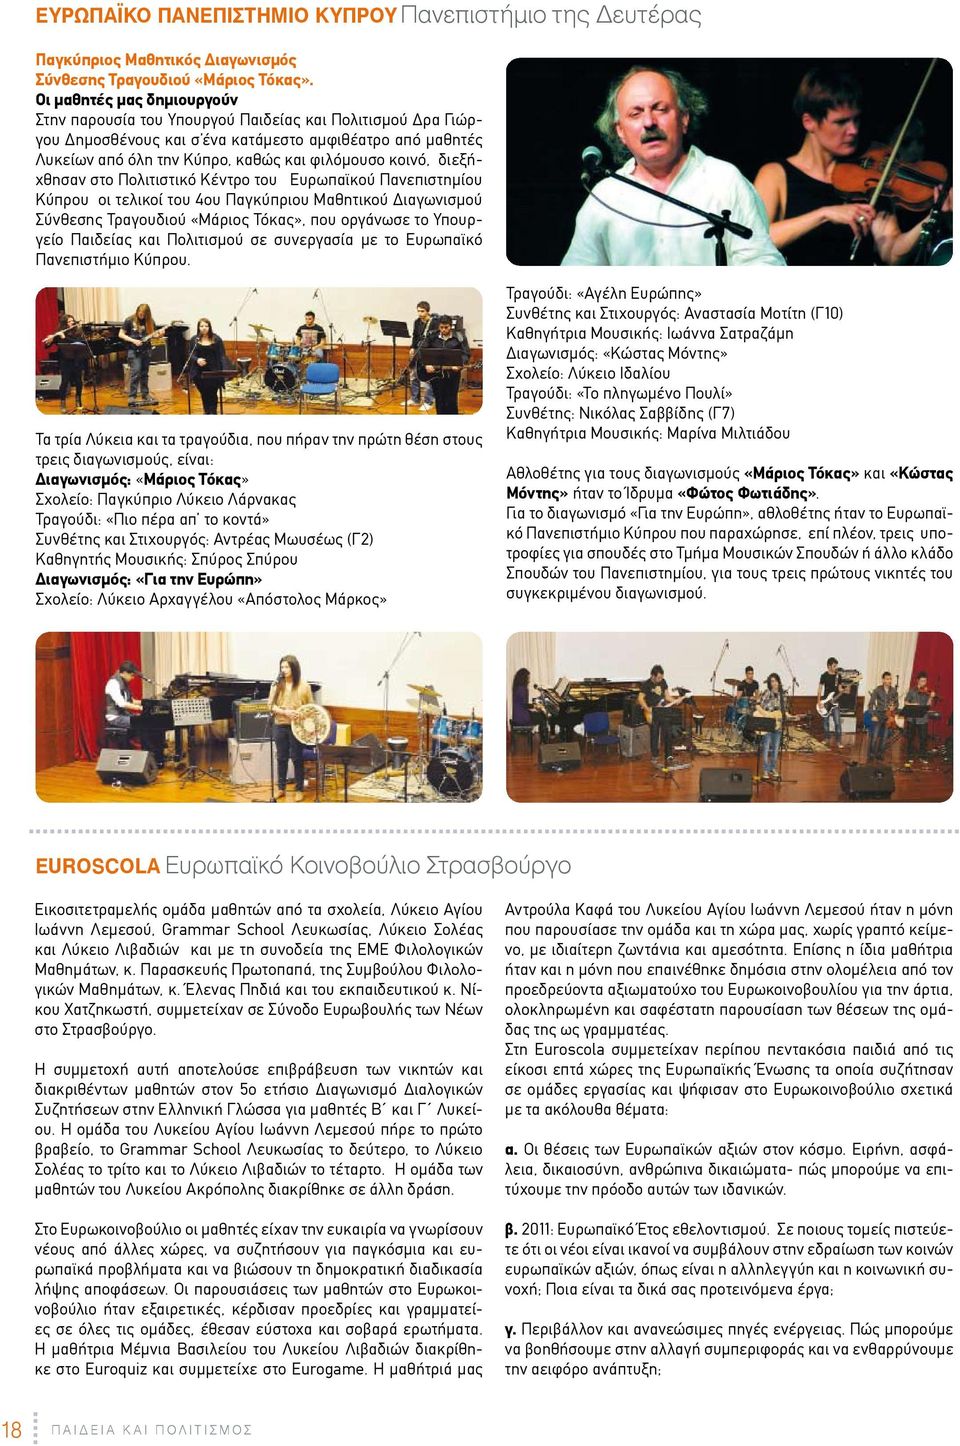 διεξήχθησαν στο Πολιτιστικό Κέντρο του Ευρωπαϊκού Πανεπιστημίου Κύπρου οι τελικοί του 4ου Παγκύπριου Μαθητικού Διαγωνισμού Σύνθεσης Τραγουδιού ÇΜάριος ΤόκαςÈ, που οργάνωσε το Υπουργείο Παιδείας και